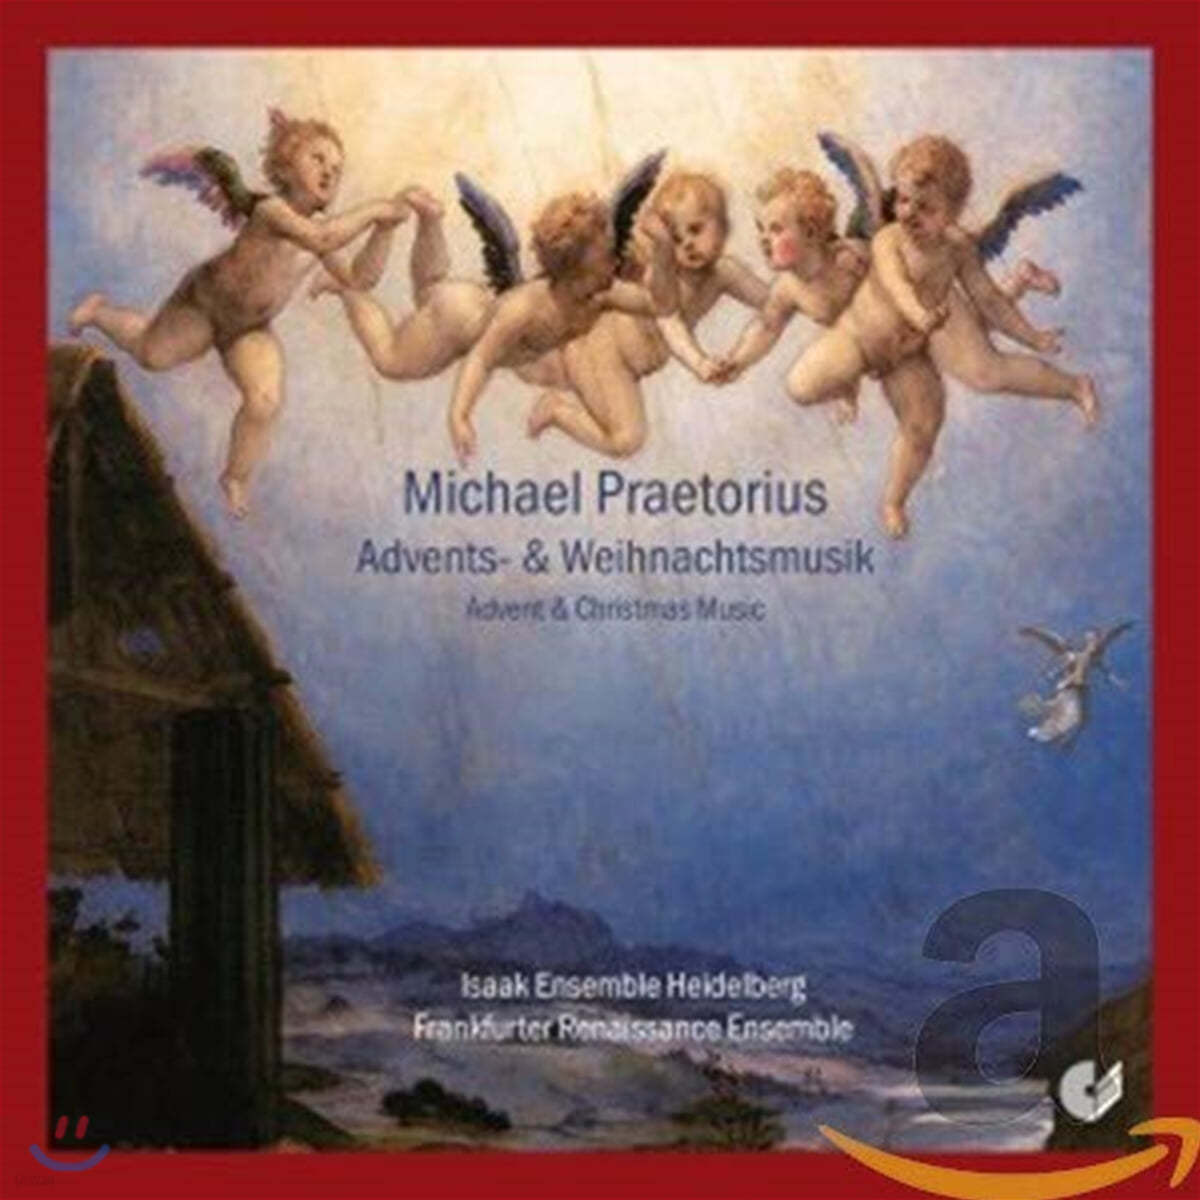 프레토리우스: 대림절과 성탄절을 위한 음악 (Michael Praetorius: Advents- und Weihnachtsmusik)